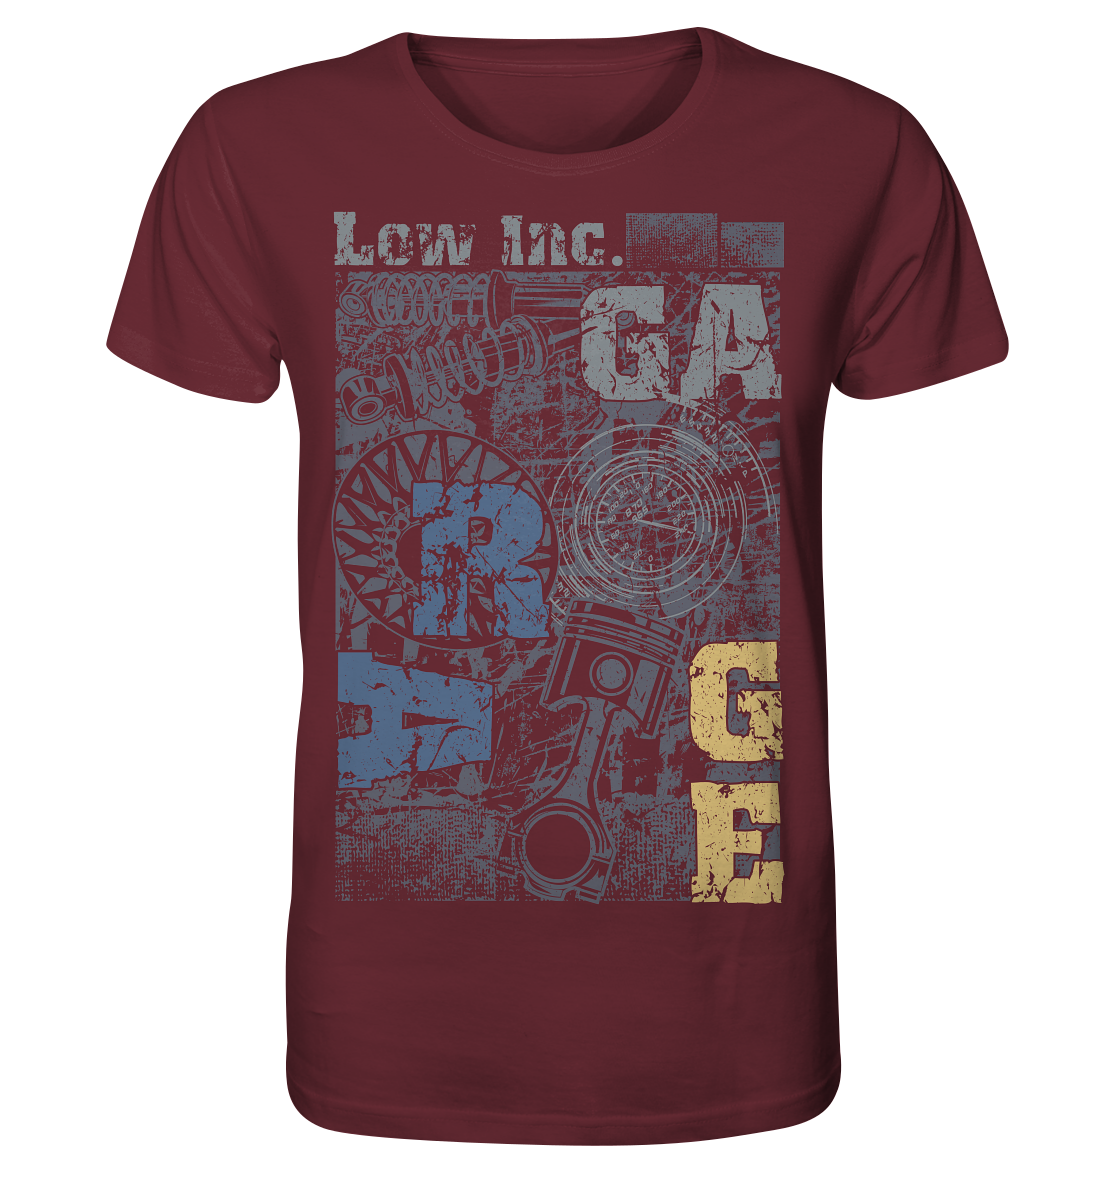 SALE ALLG_Low Inc. Garage